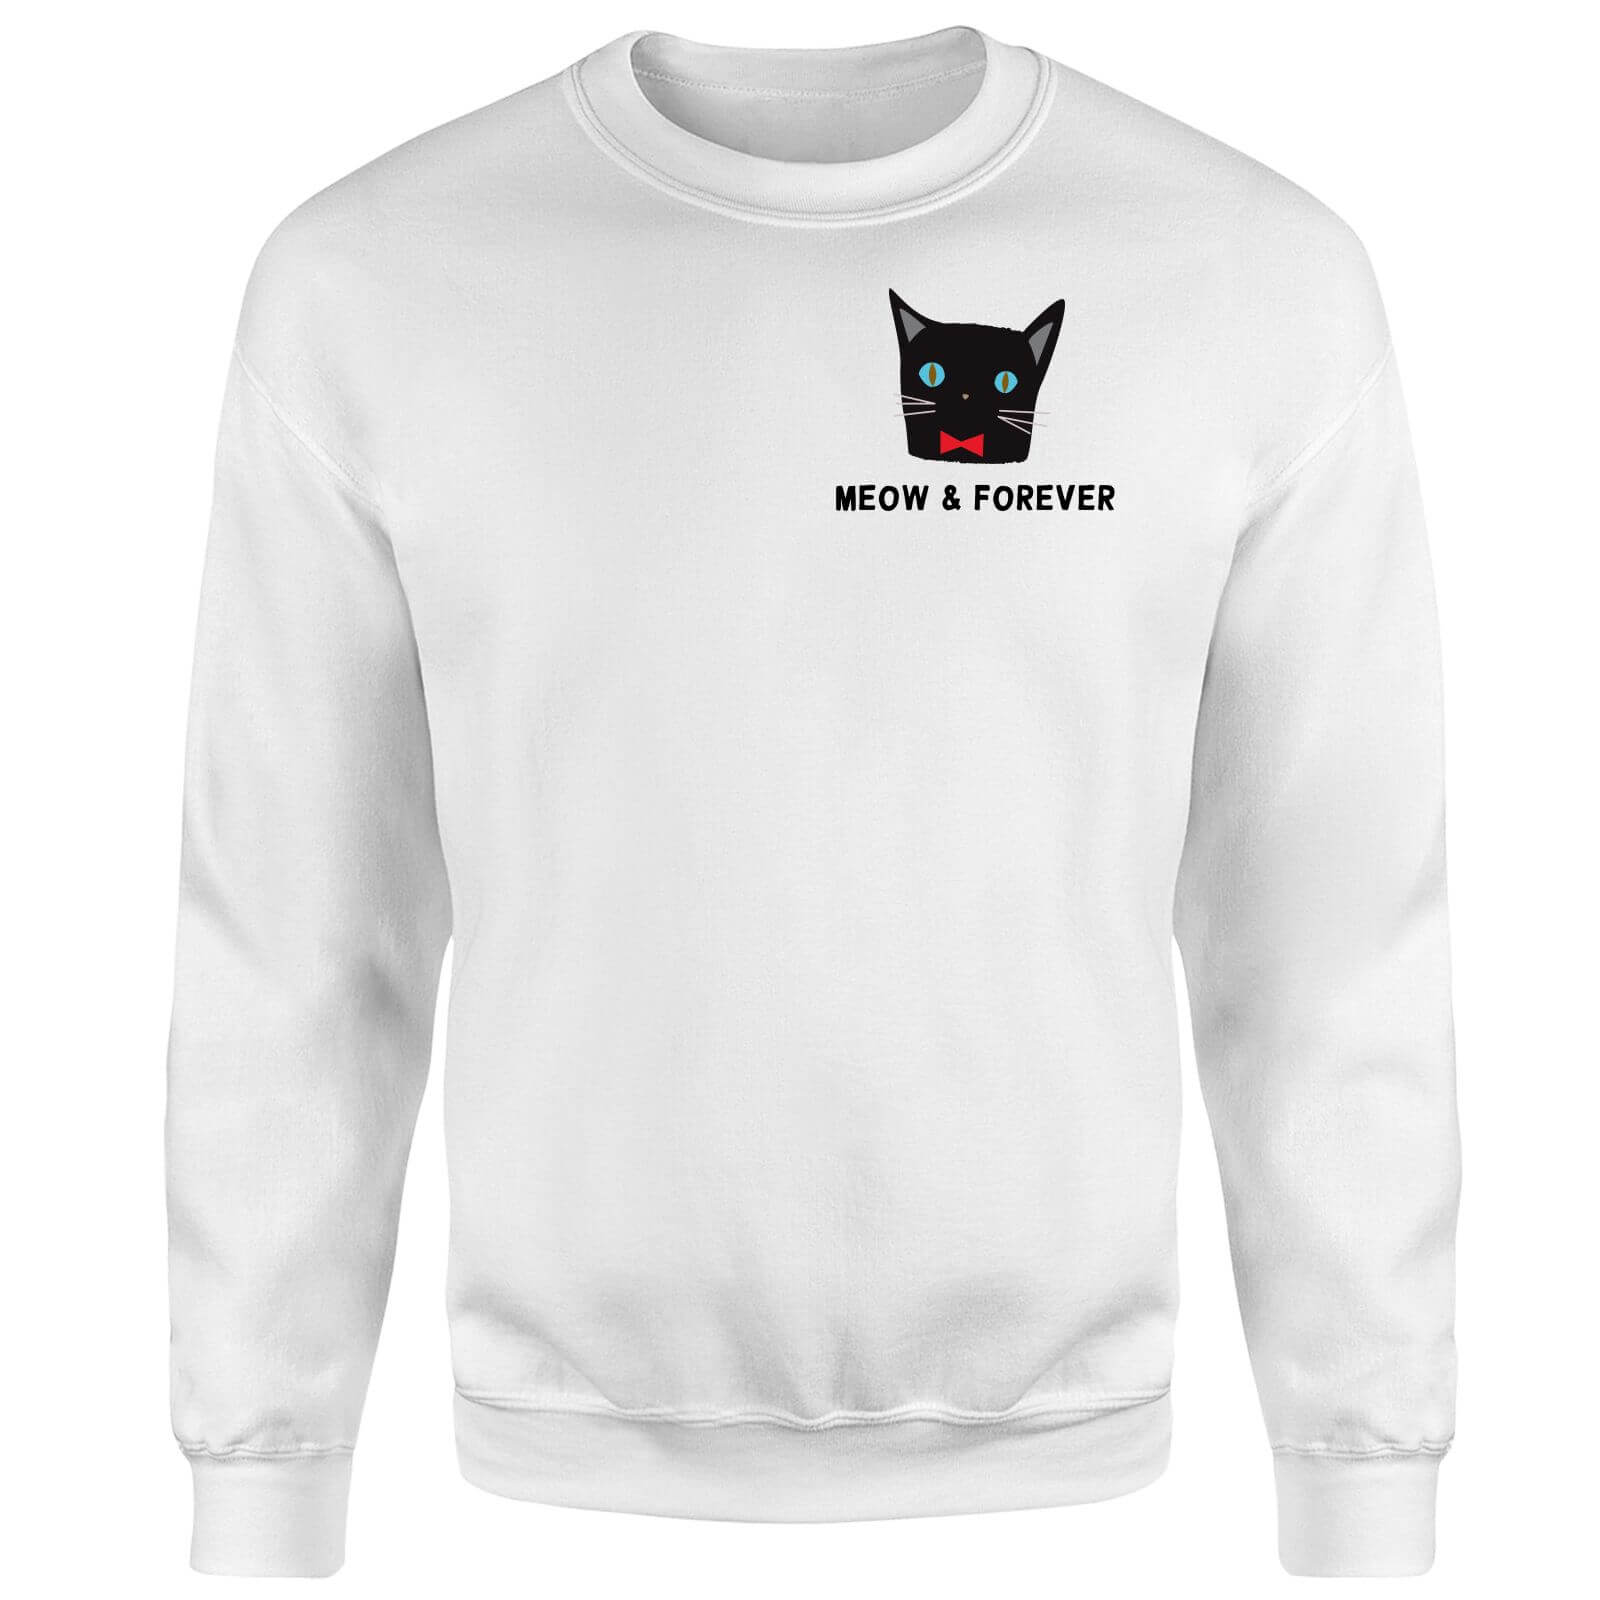 Meow & Forever Sweatshirt - White - XXL - White